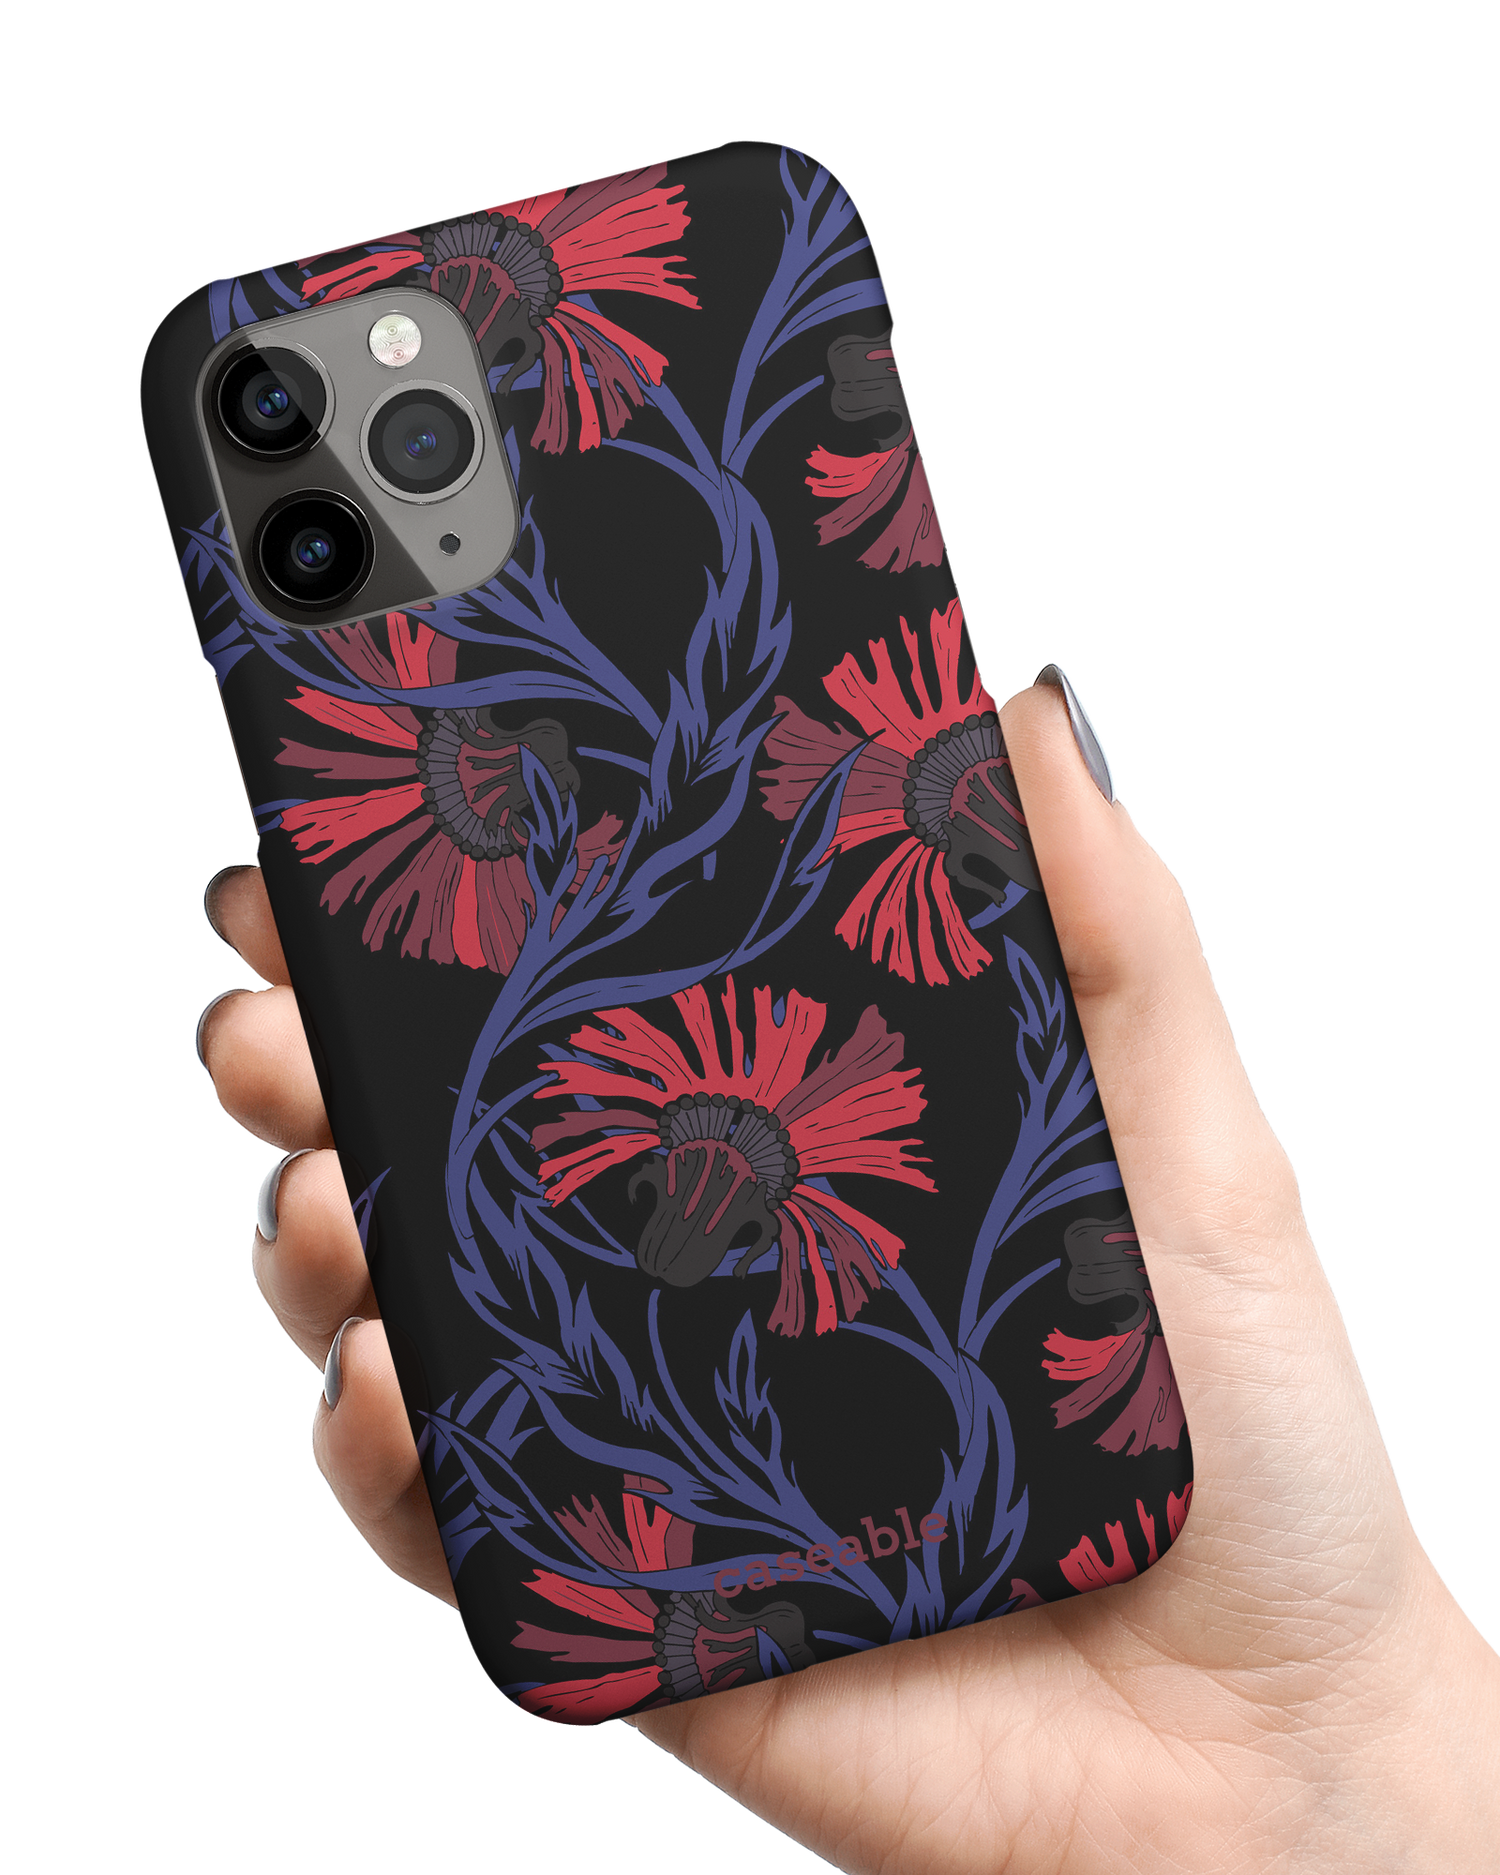 Midnight Floral Hardcase Handyhülle Apple iPhone 11 Pro Max in der Hand gehalten